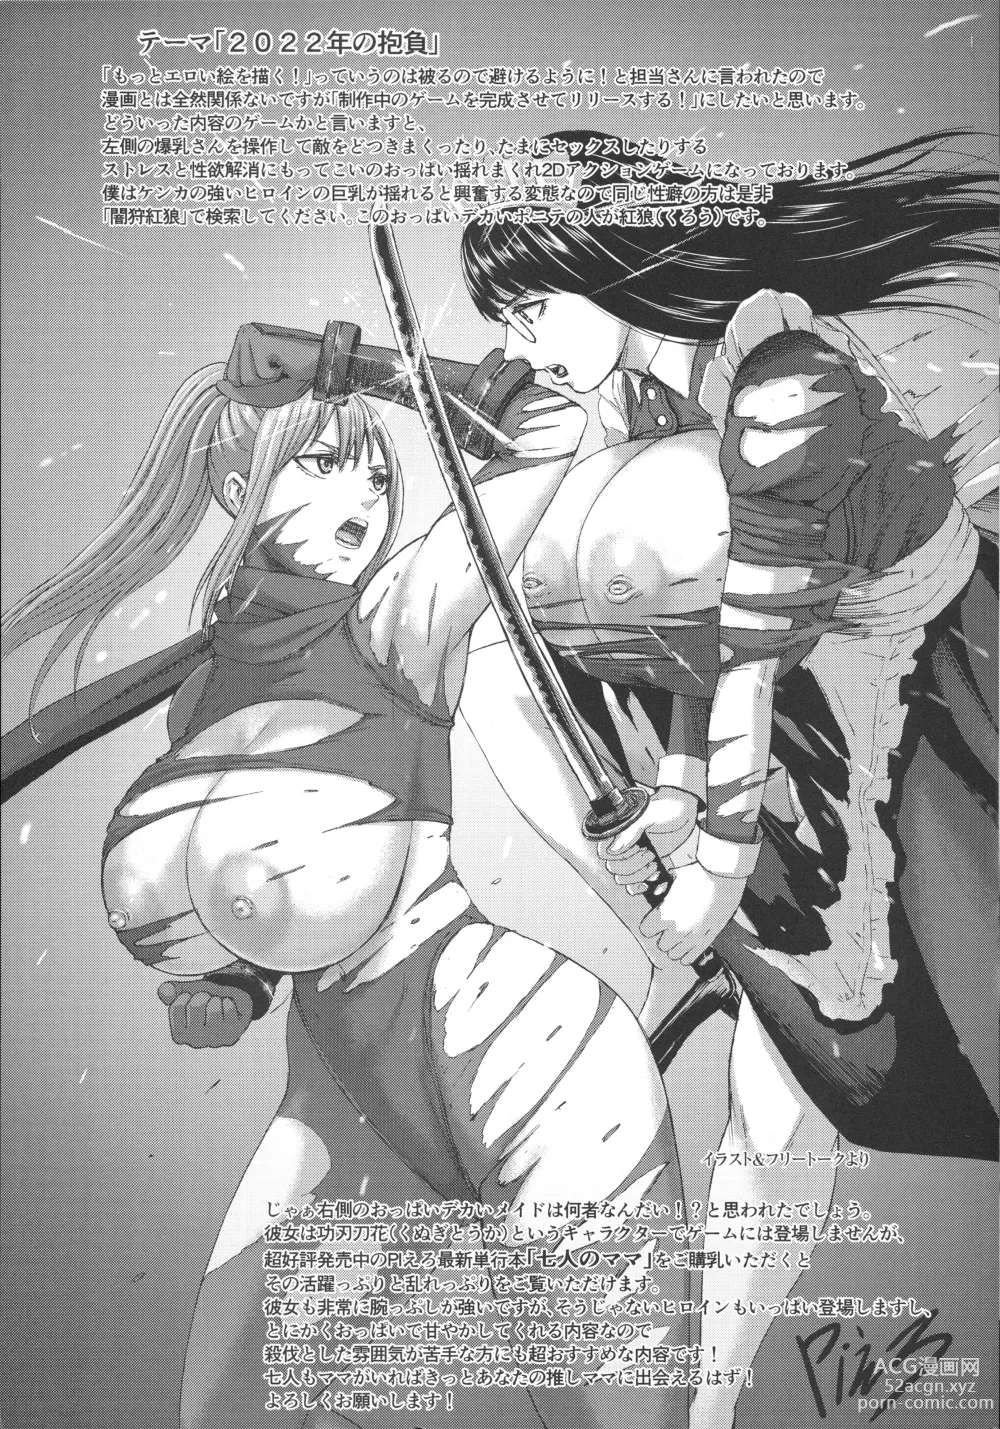 Page 224 of manga AV Family + bonuses